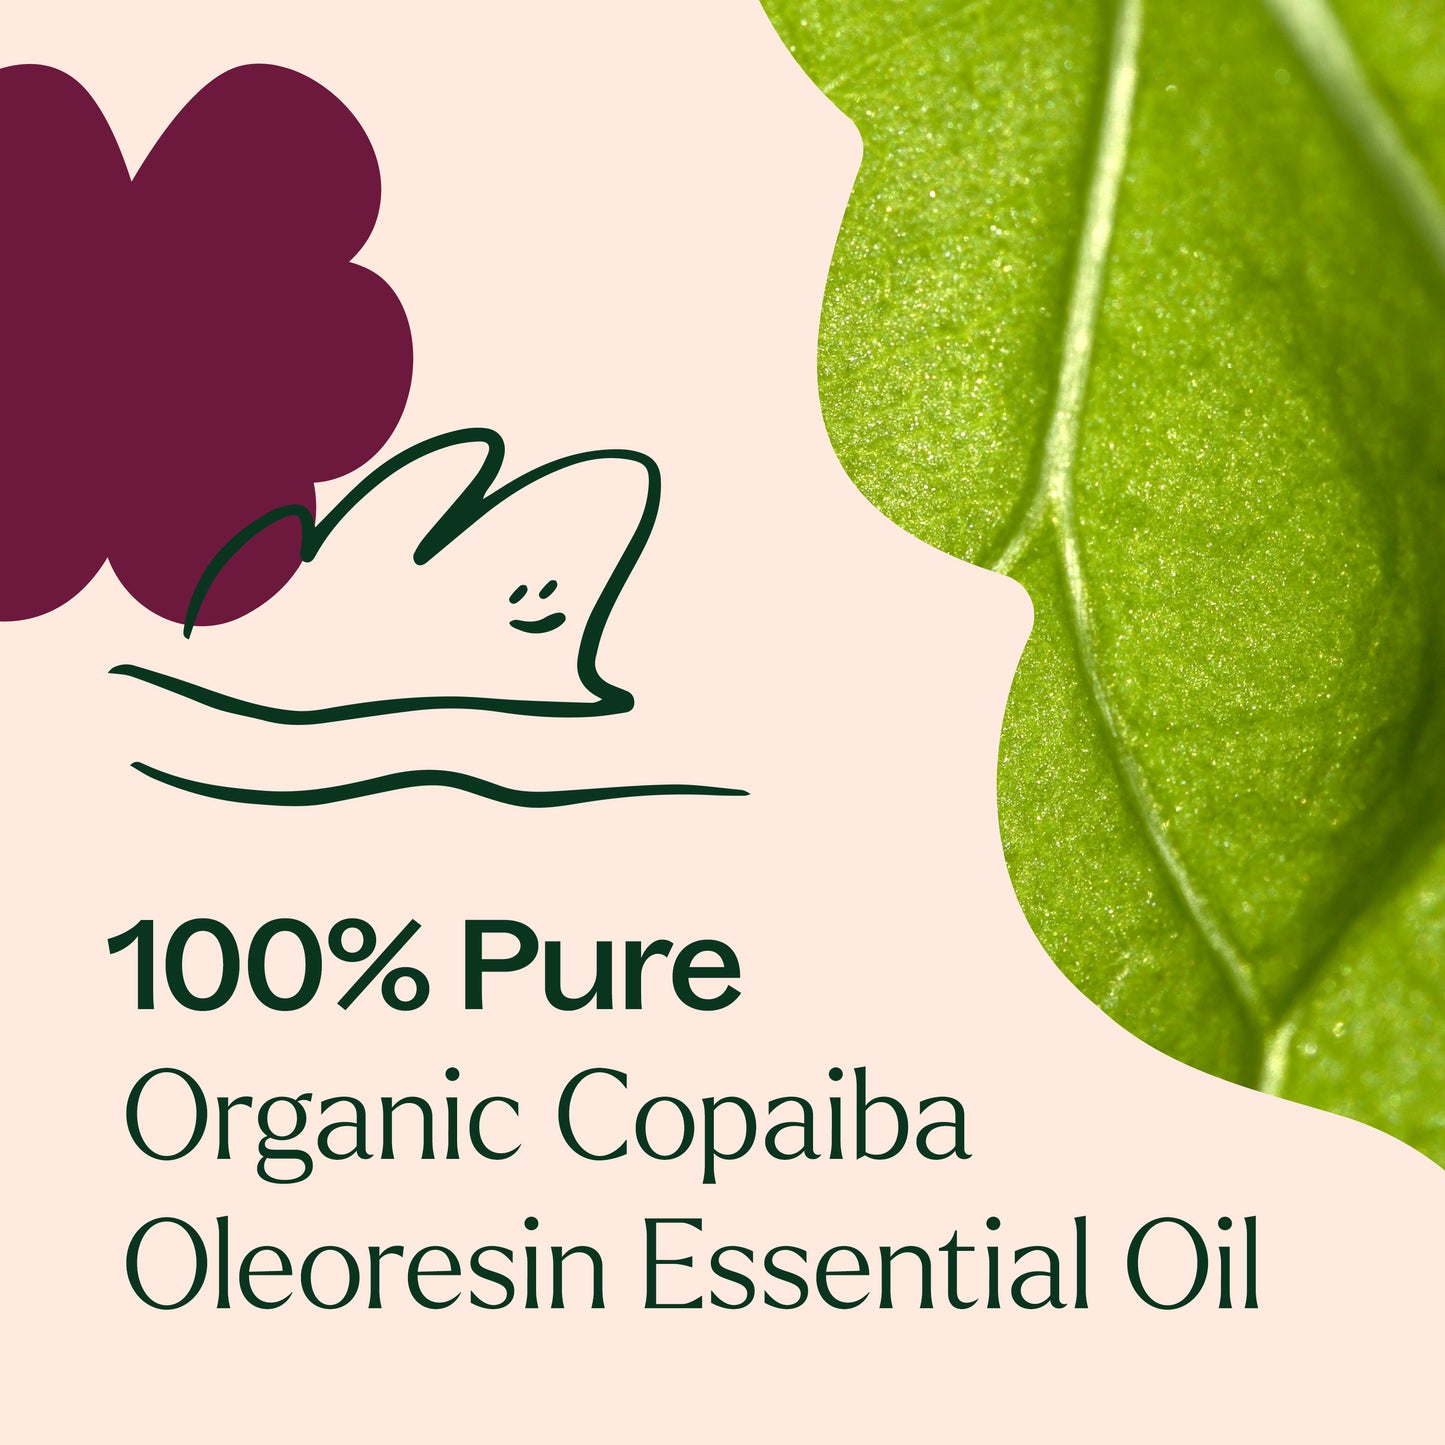 100% Pure Organic Copaiba Oleoresin Essential Oil